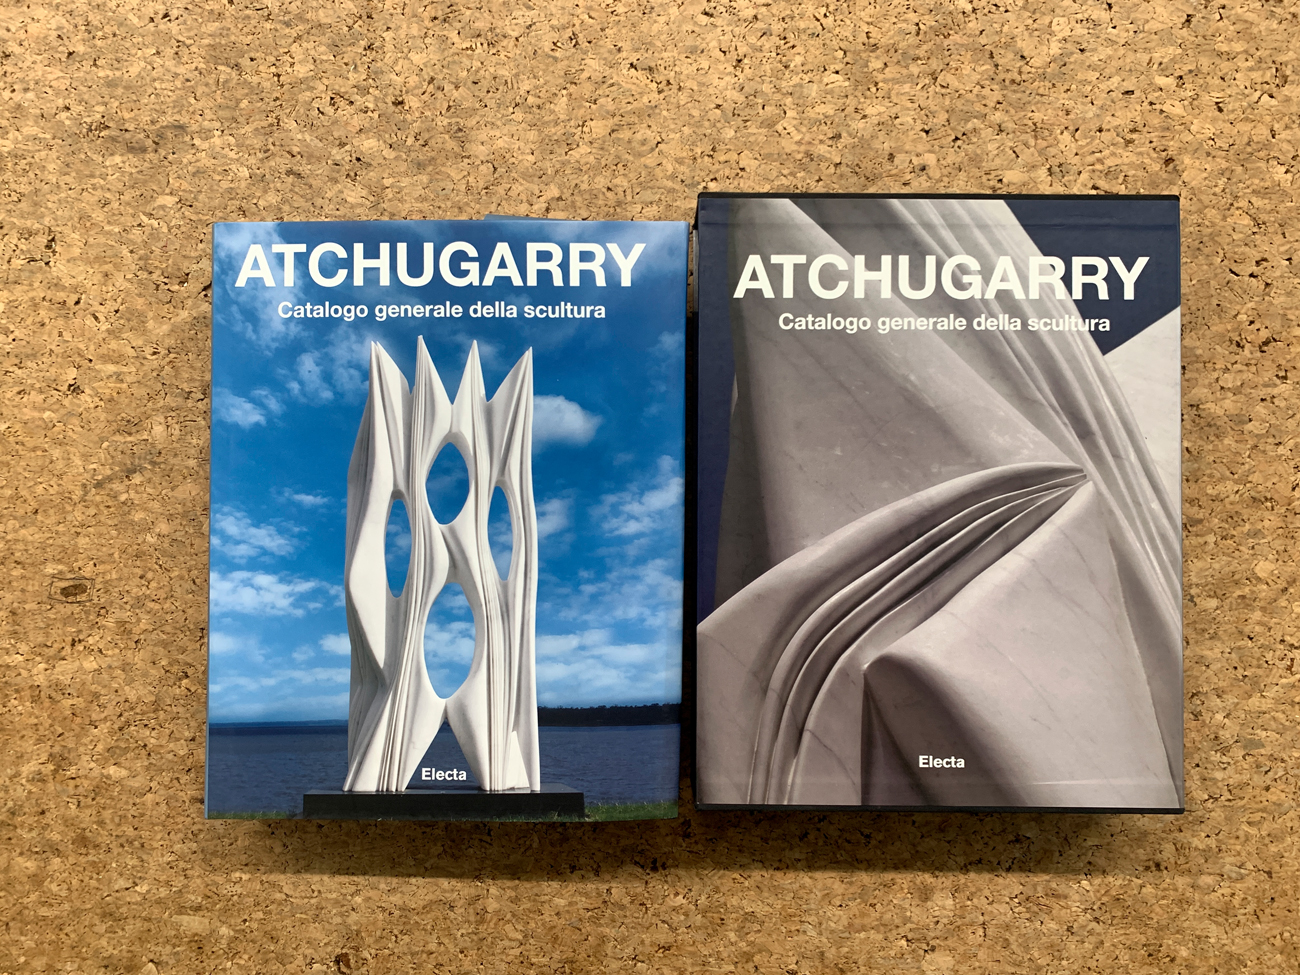 CATALOGO CON DISEGNO (PABLO ATCHUGARRY) - Atchugarry. Catalogo generale della scultura. Volume secondo 2003-2013, 2013